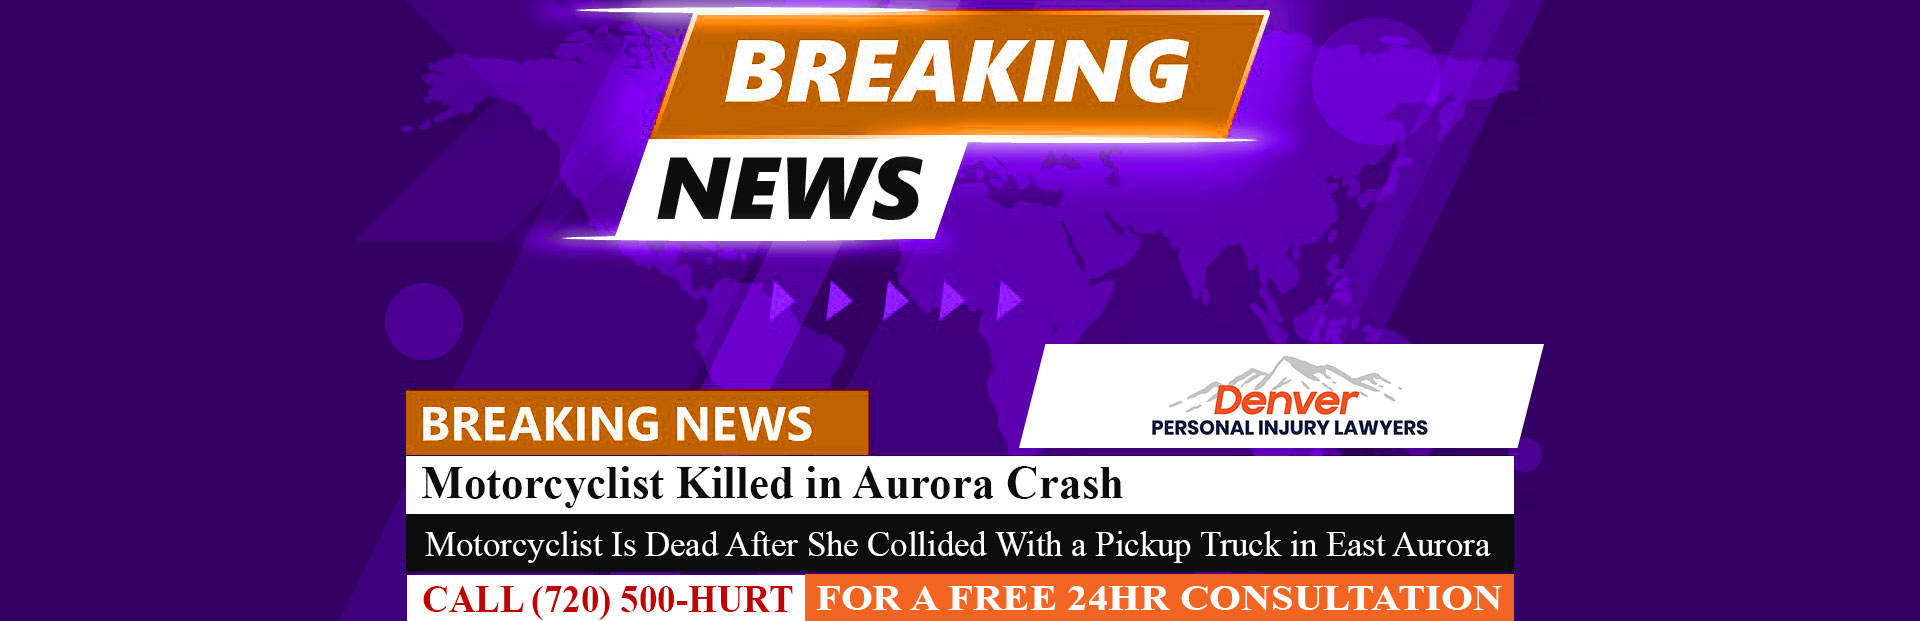 [8-5-22] Motorcyclist Killed in Aurora Crash